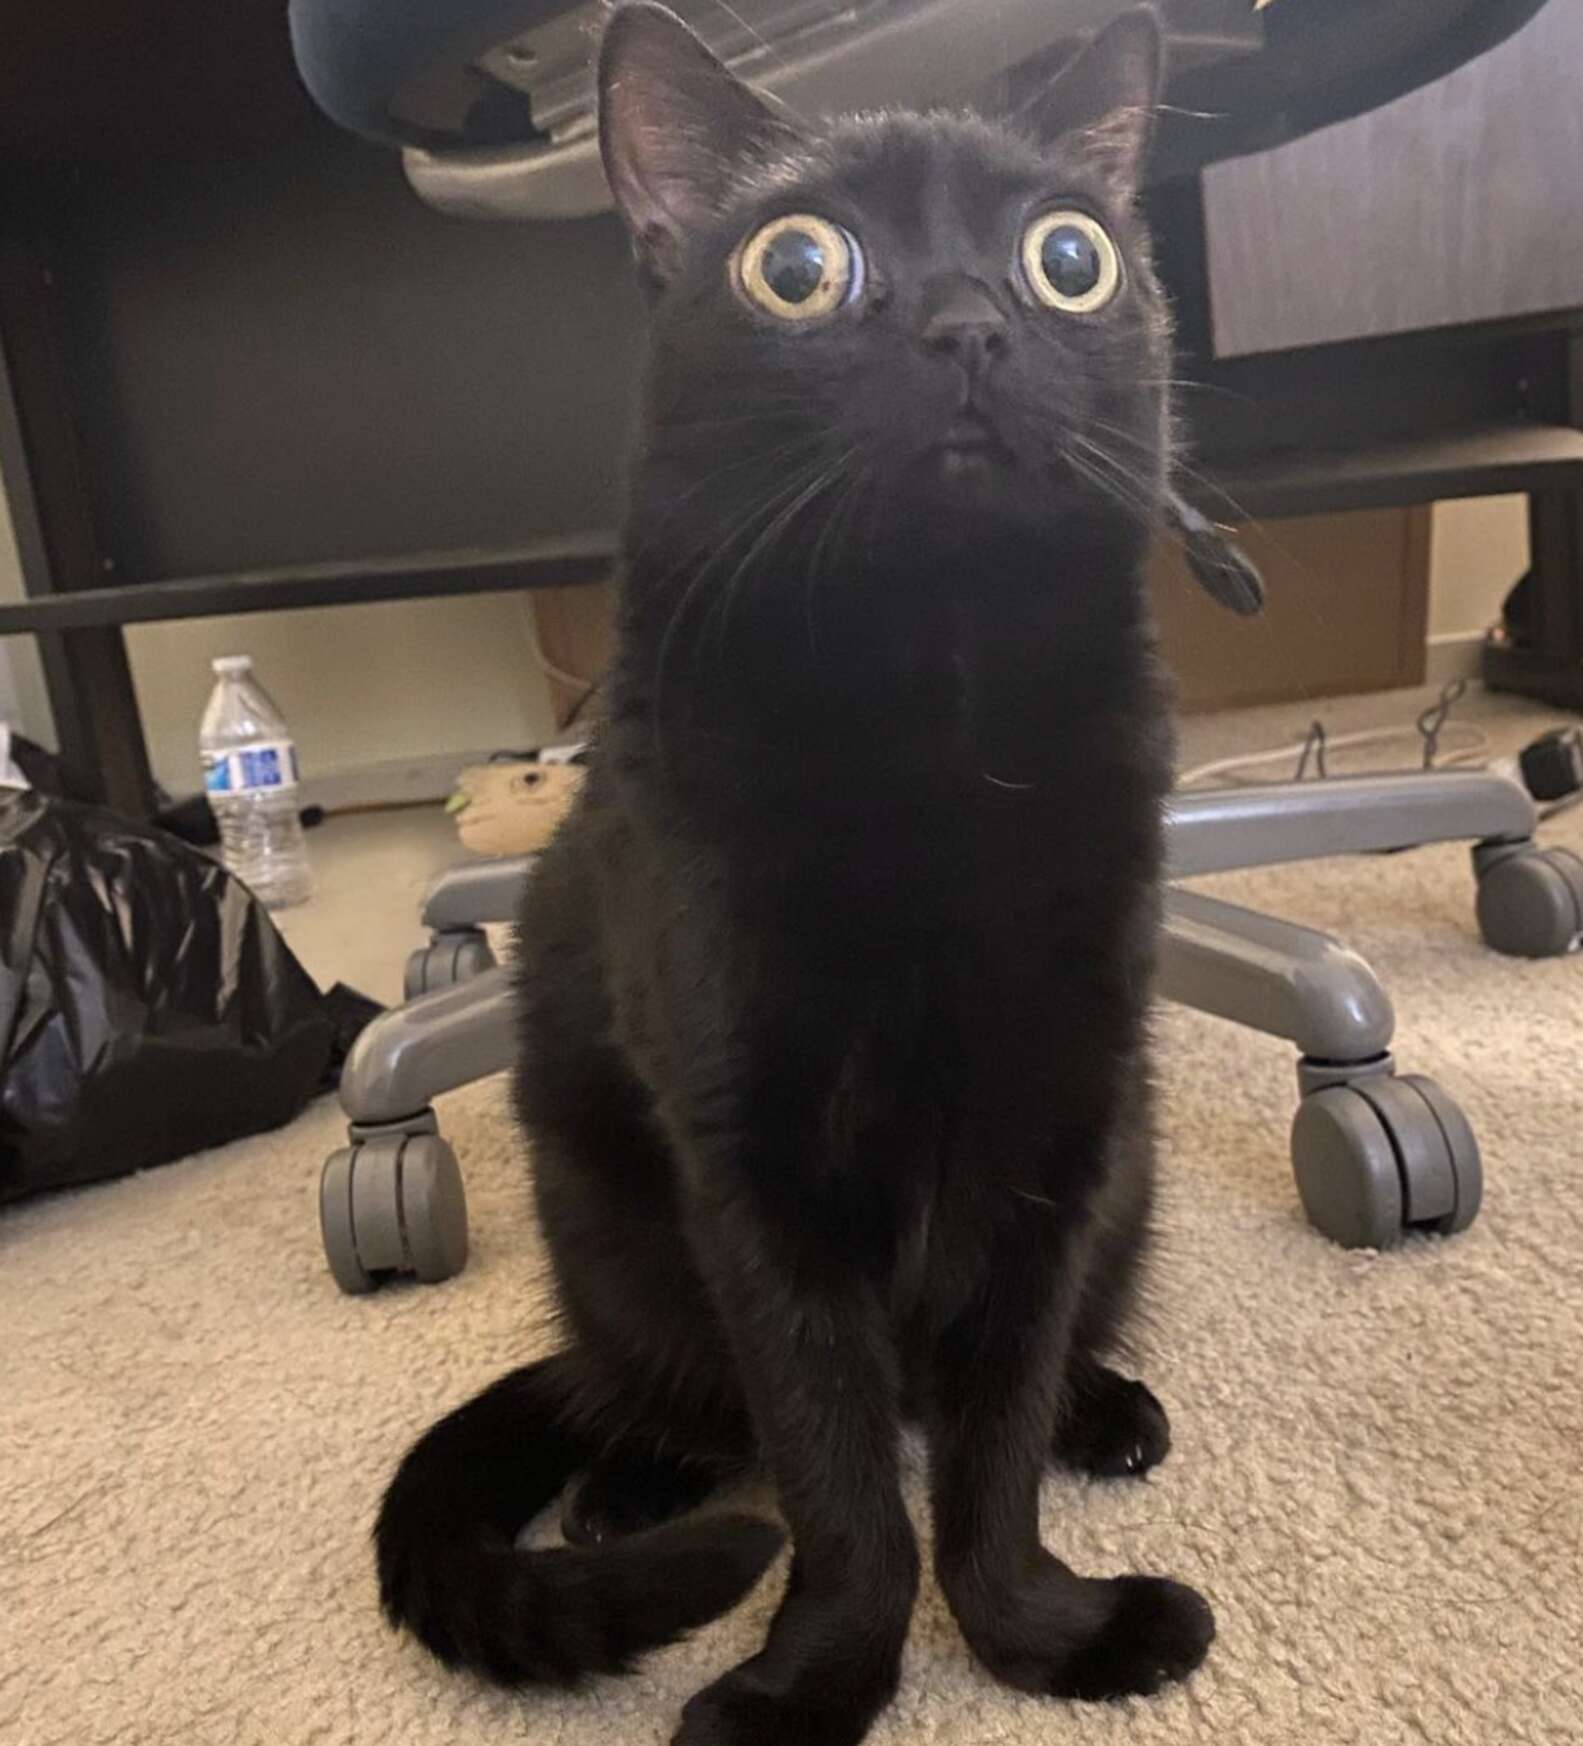 Rescue Kitten's Huge Eyes Make her Look Like an Alien